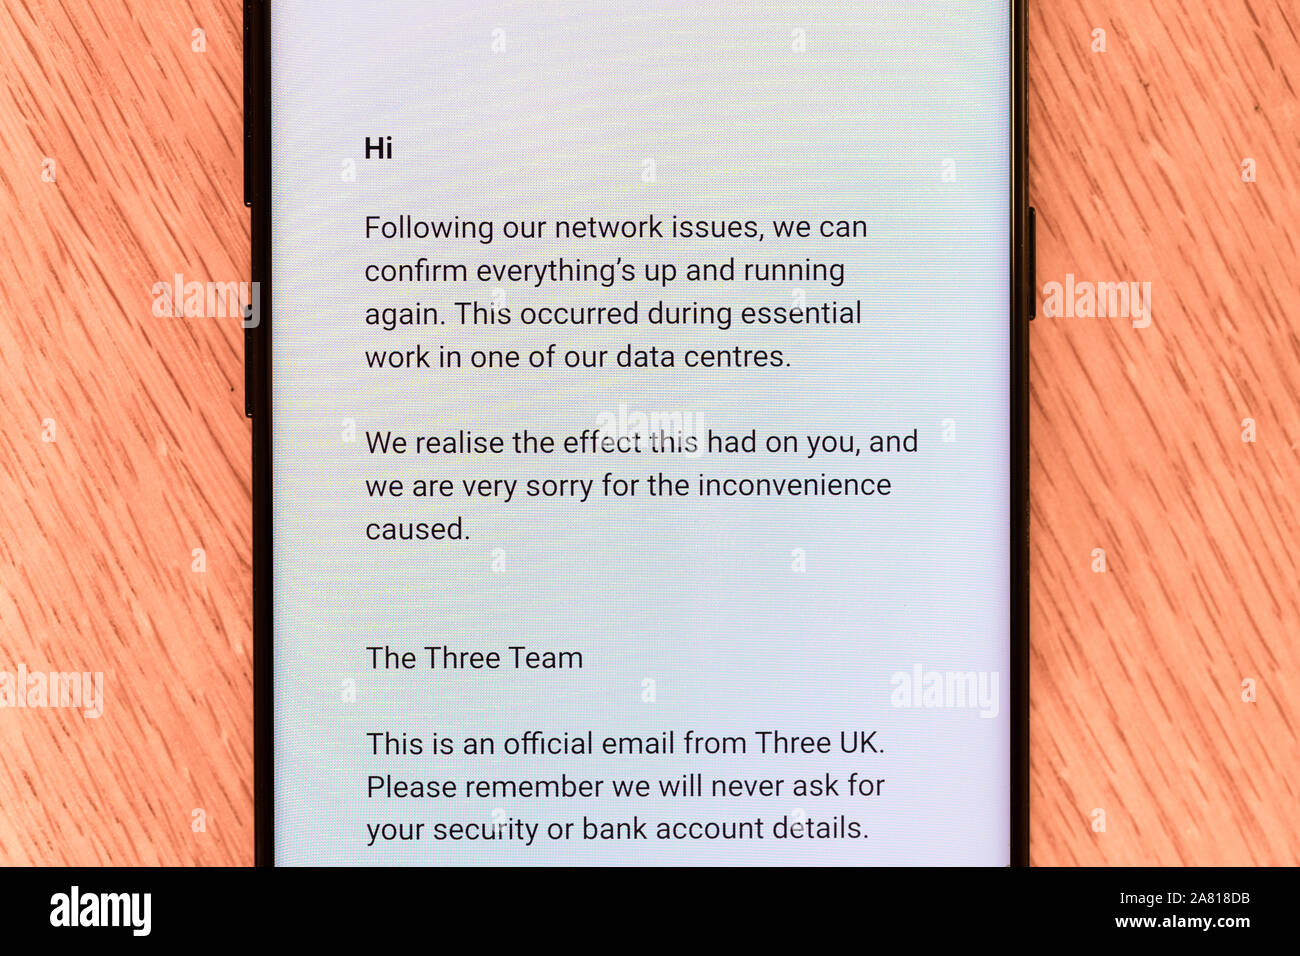 Eine E-Mail von drei auf einem Smartphone - eine britische Mobilfunkanbieter - entschuldigt sich für eines der letzten Netzwerkausfall Stockfoto